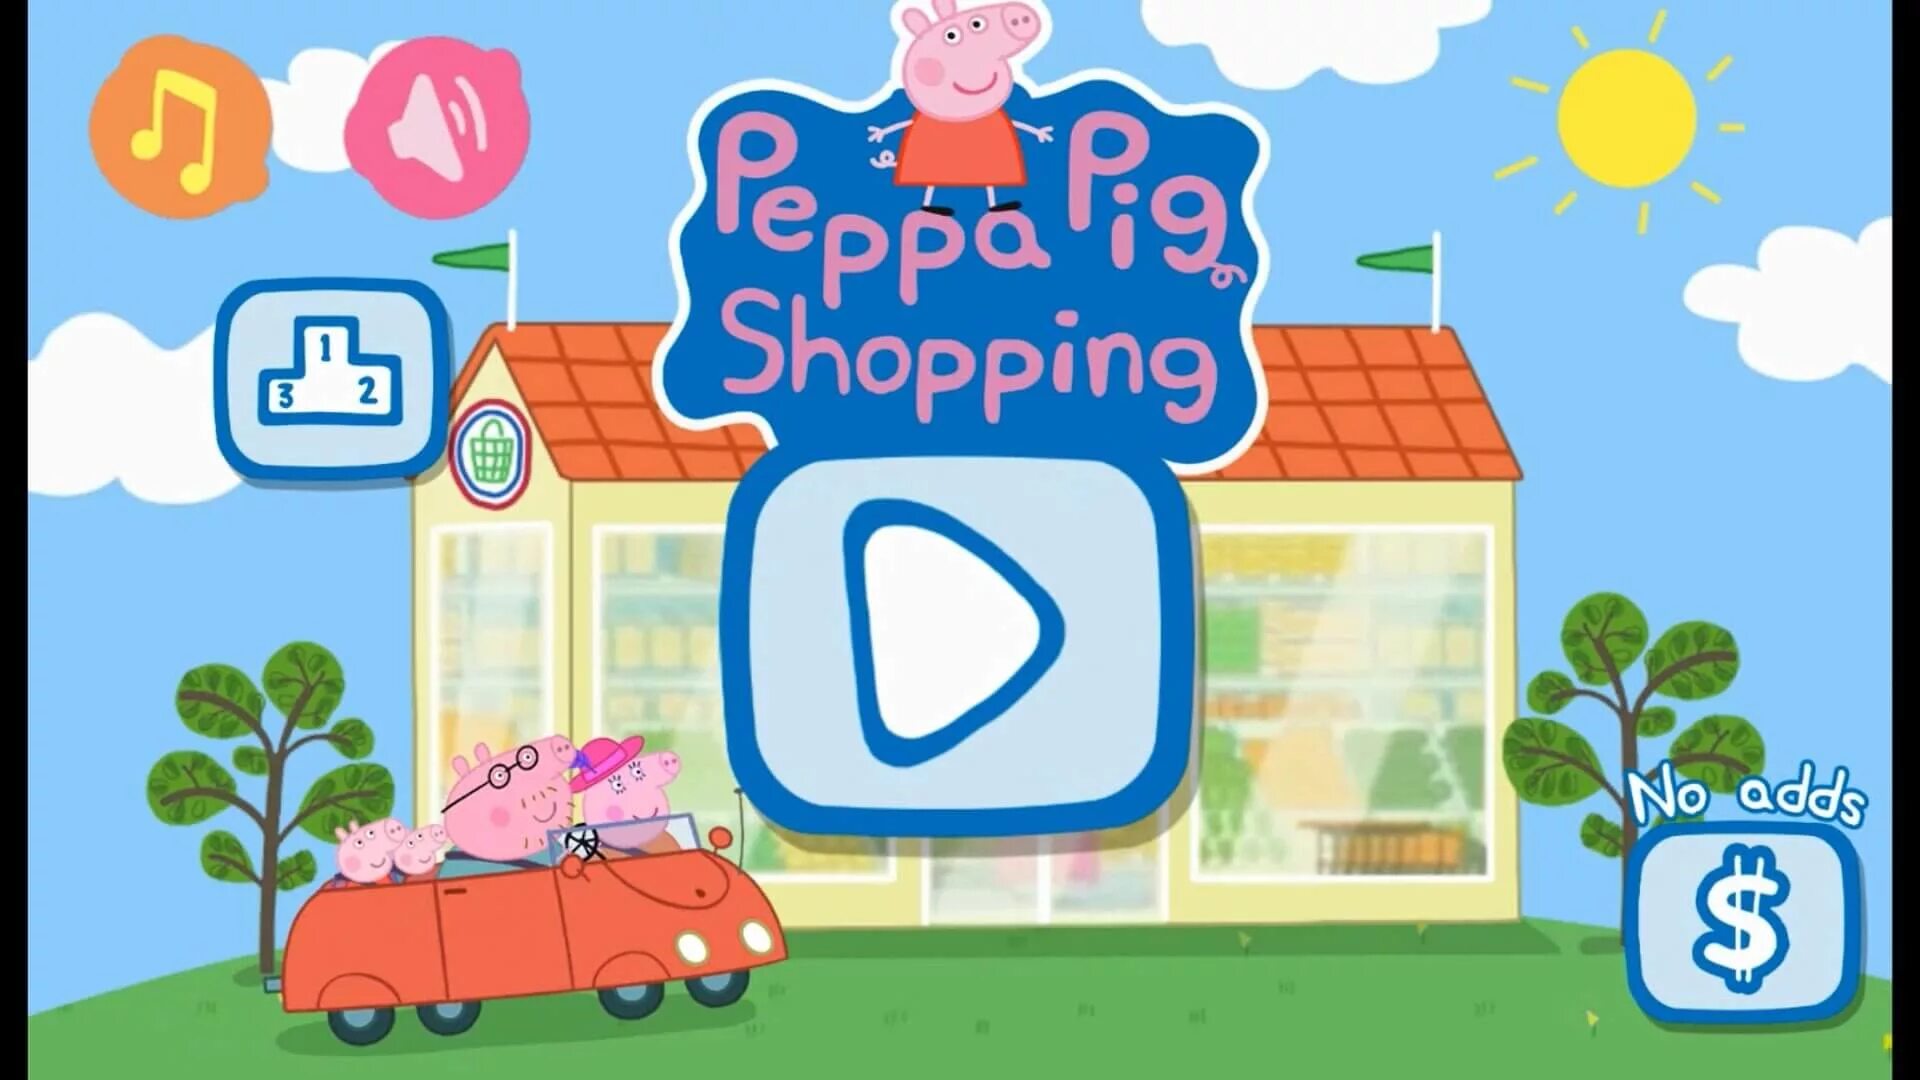 Игра Пеппа. Peppa Pig игра. Свинка Пеппа магазин игра. Свинка Пеппа супермаркет игра. Играть пепа